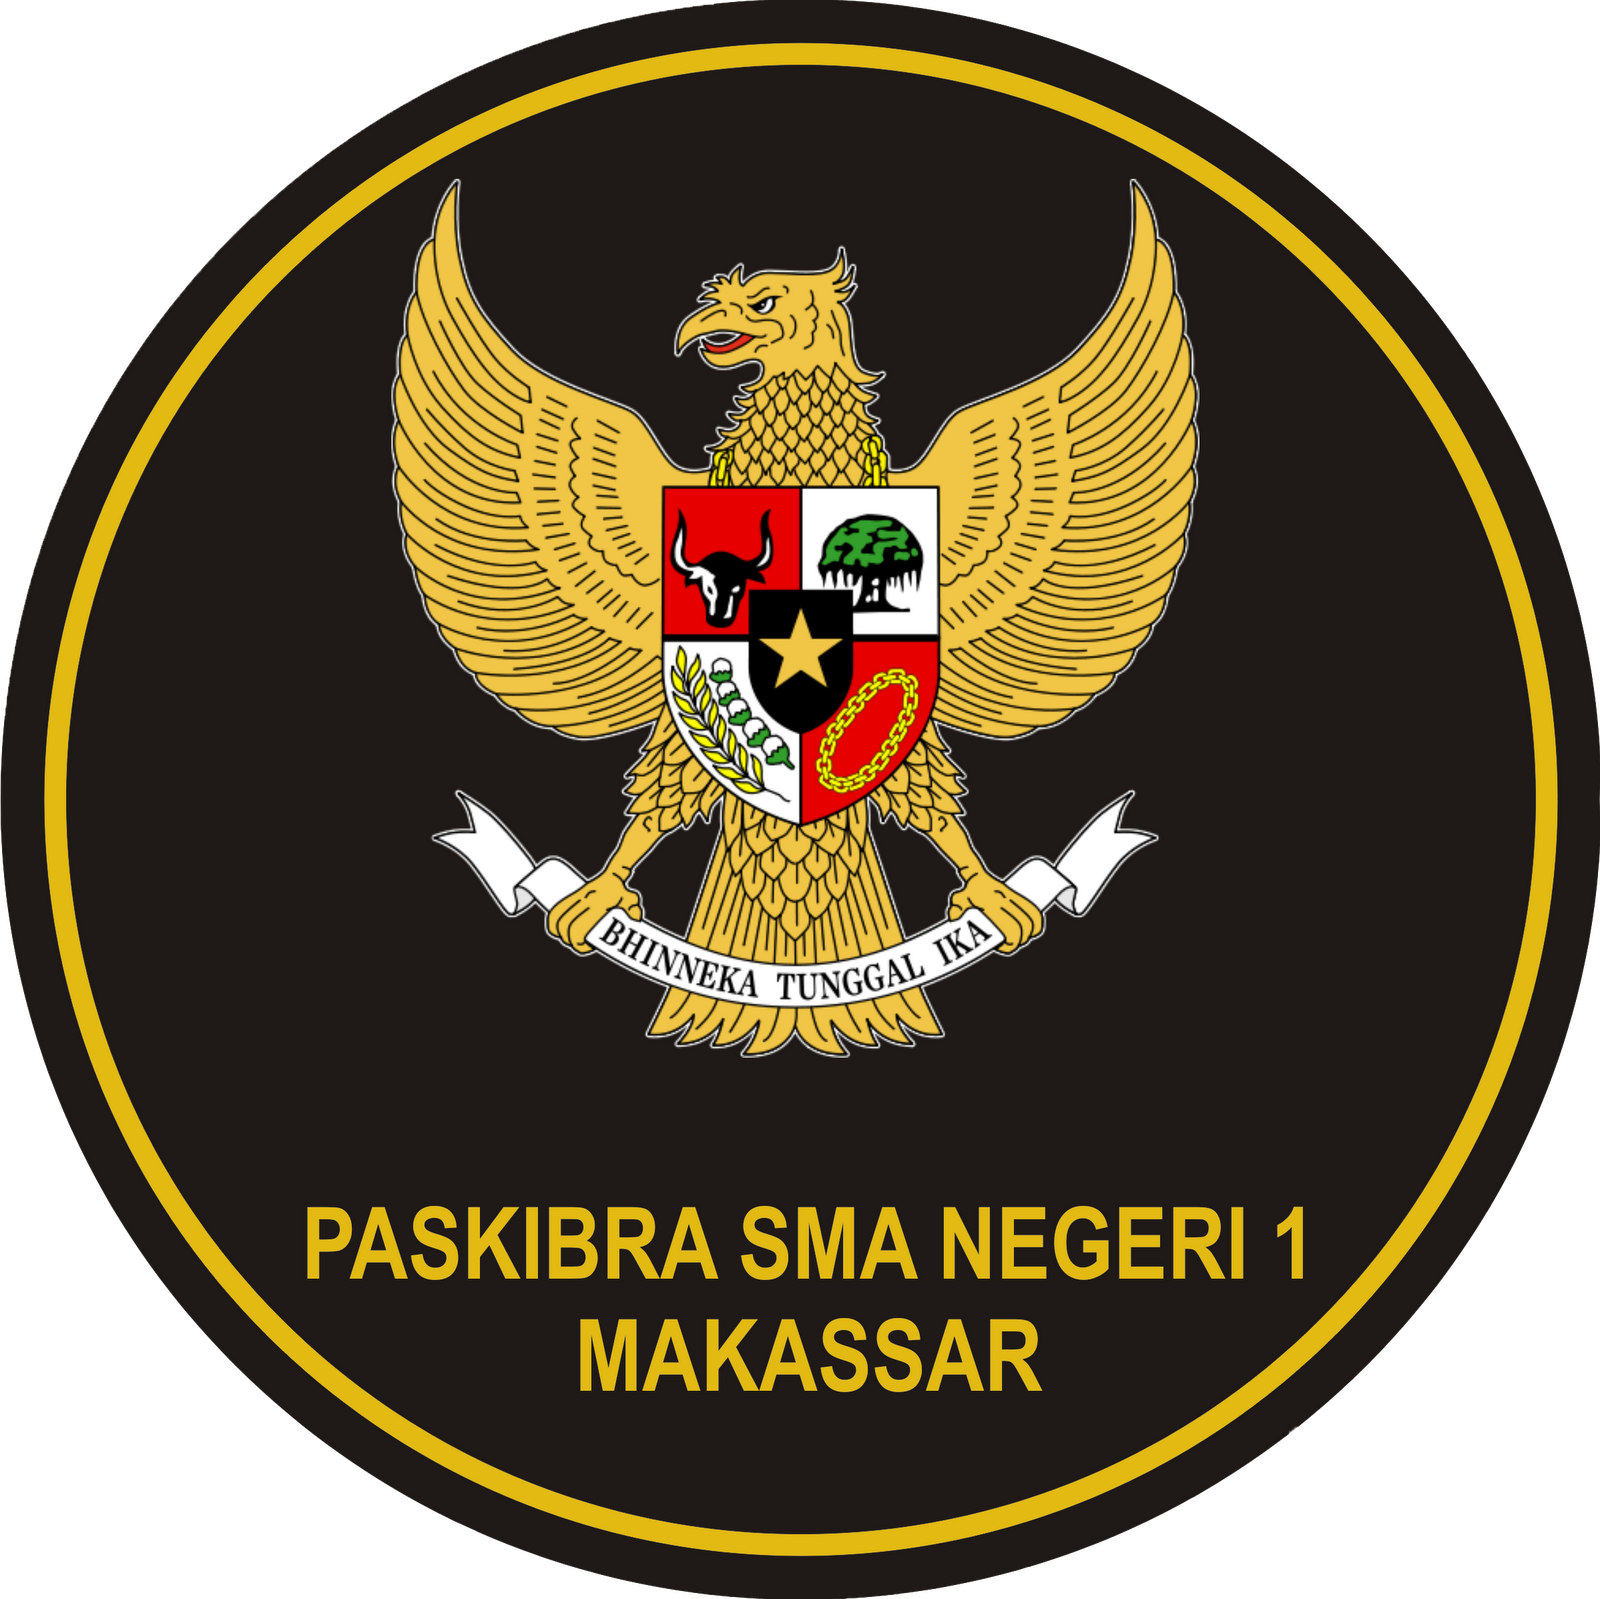 Paskibra SMA Negeri 1 Makassar